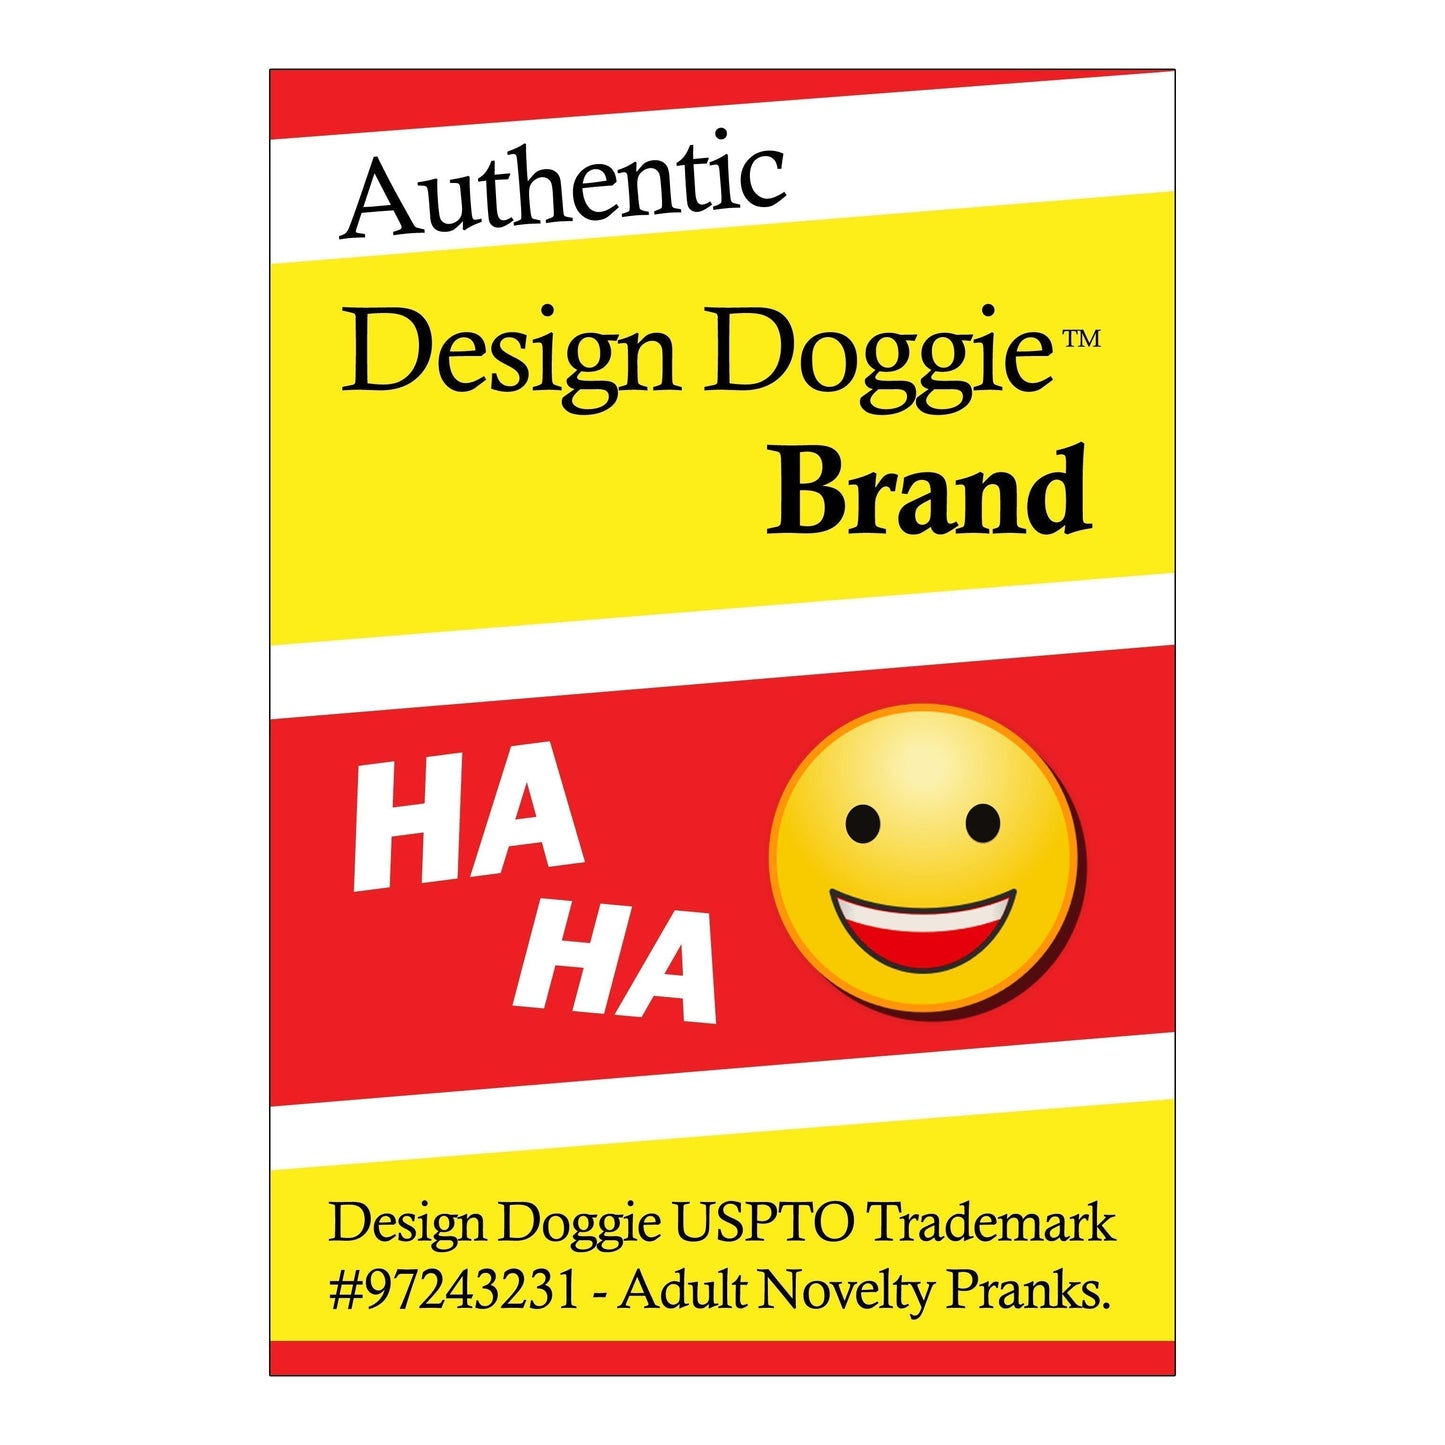 LGBTQIA2S Design Doggie Brand